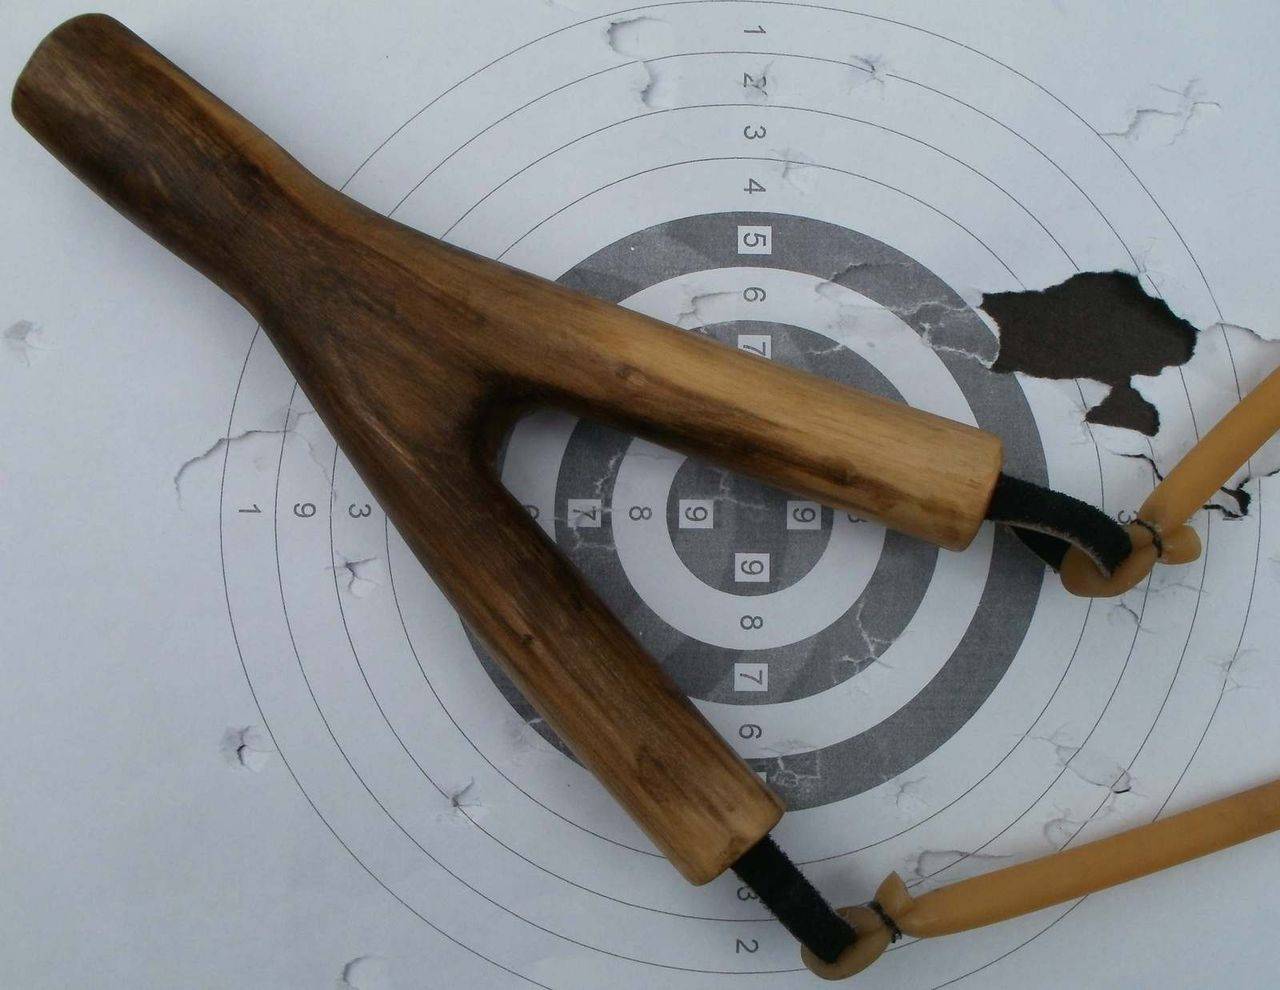 Чертежи профессиональной самодельной рогатки из дерева – как сделать мощное оружие для охоты в домашних условиях